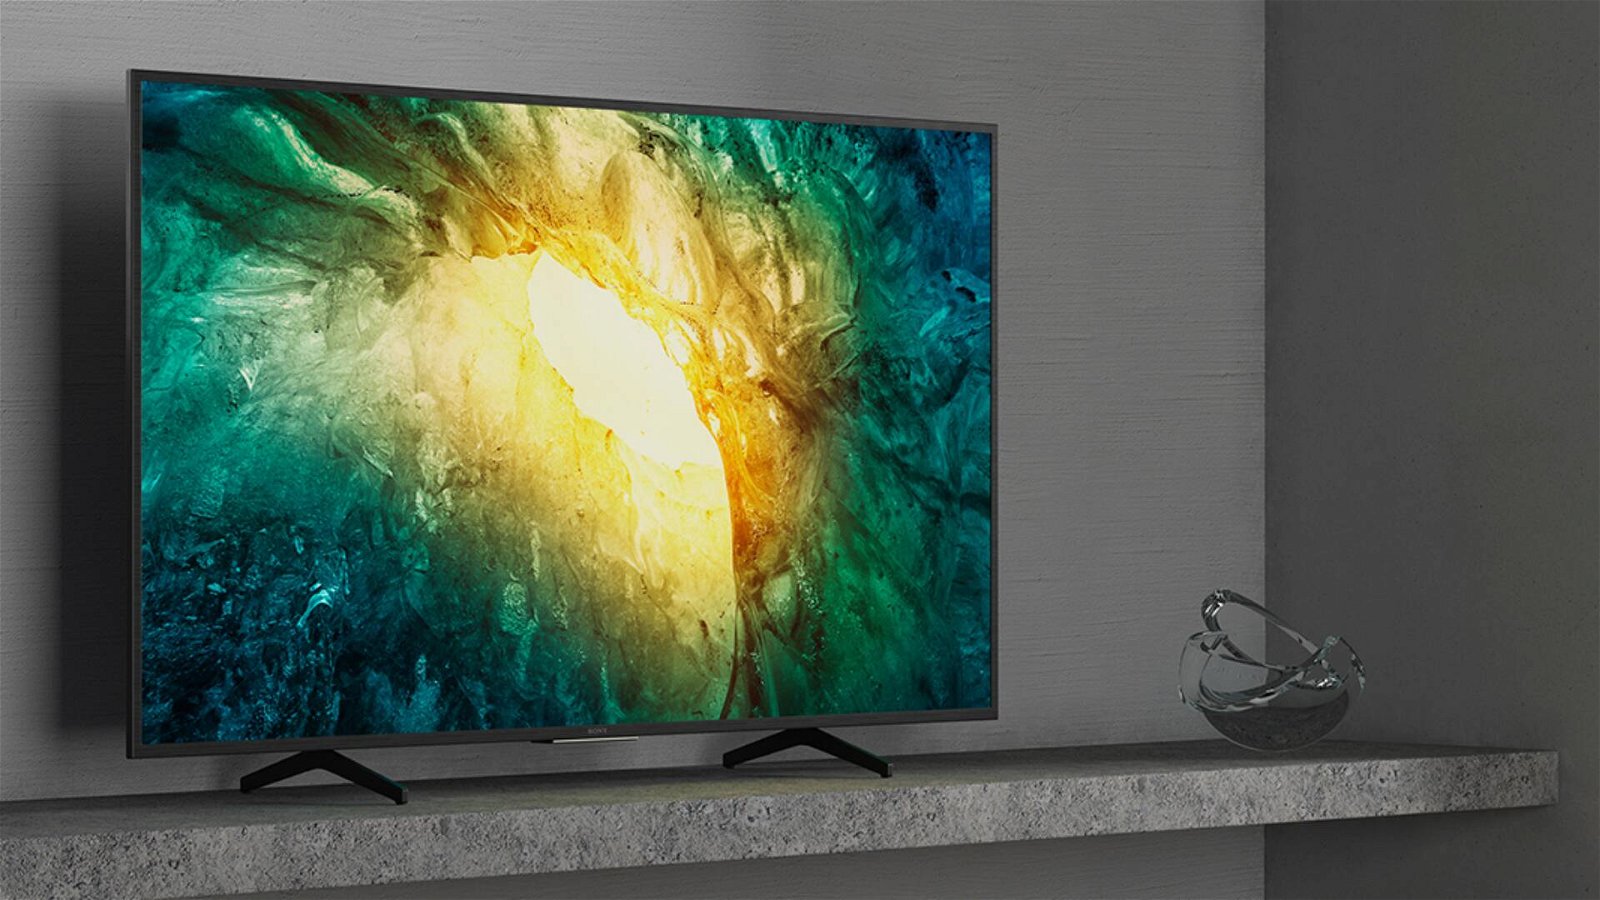 Immagine di Offerte del giorno Amazon: 300€ di sconto su una splendida smart TV Sony 4K!